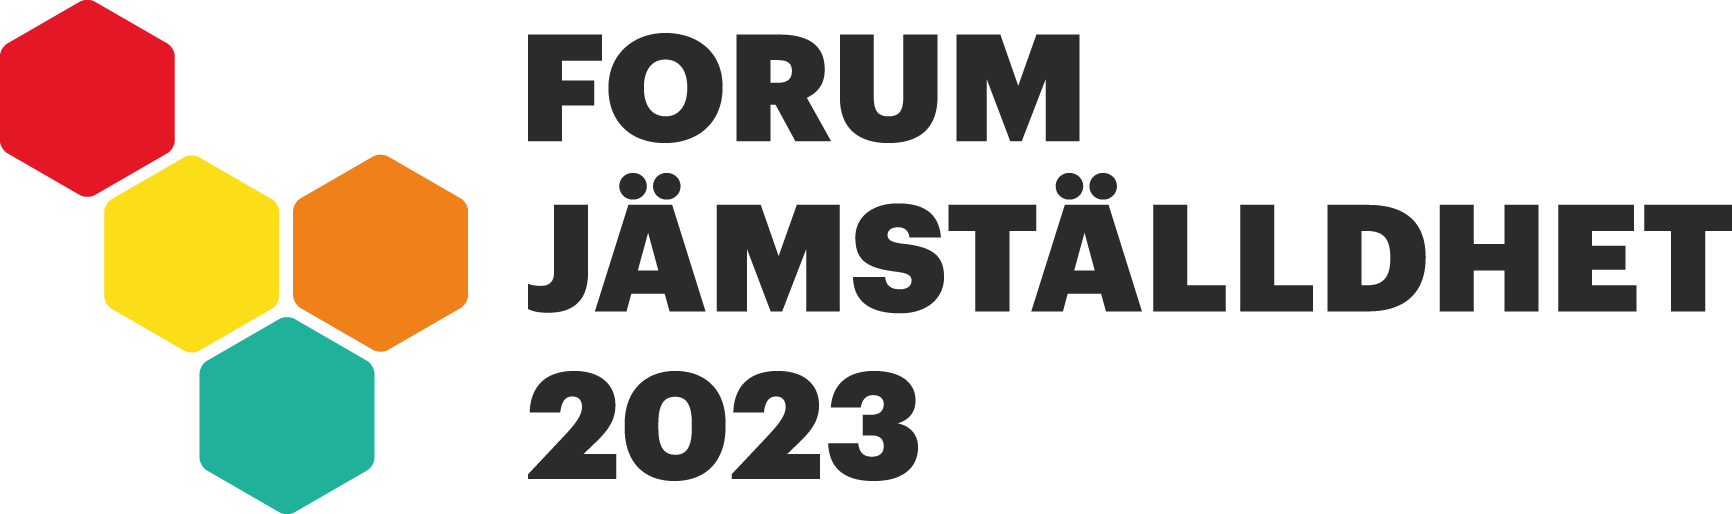 Forum 2023 sv kopiera